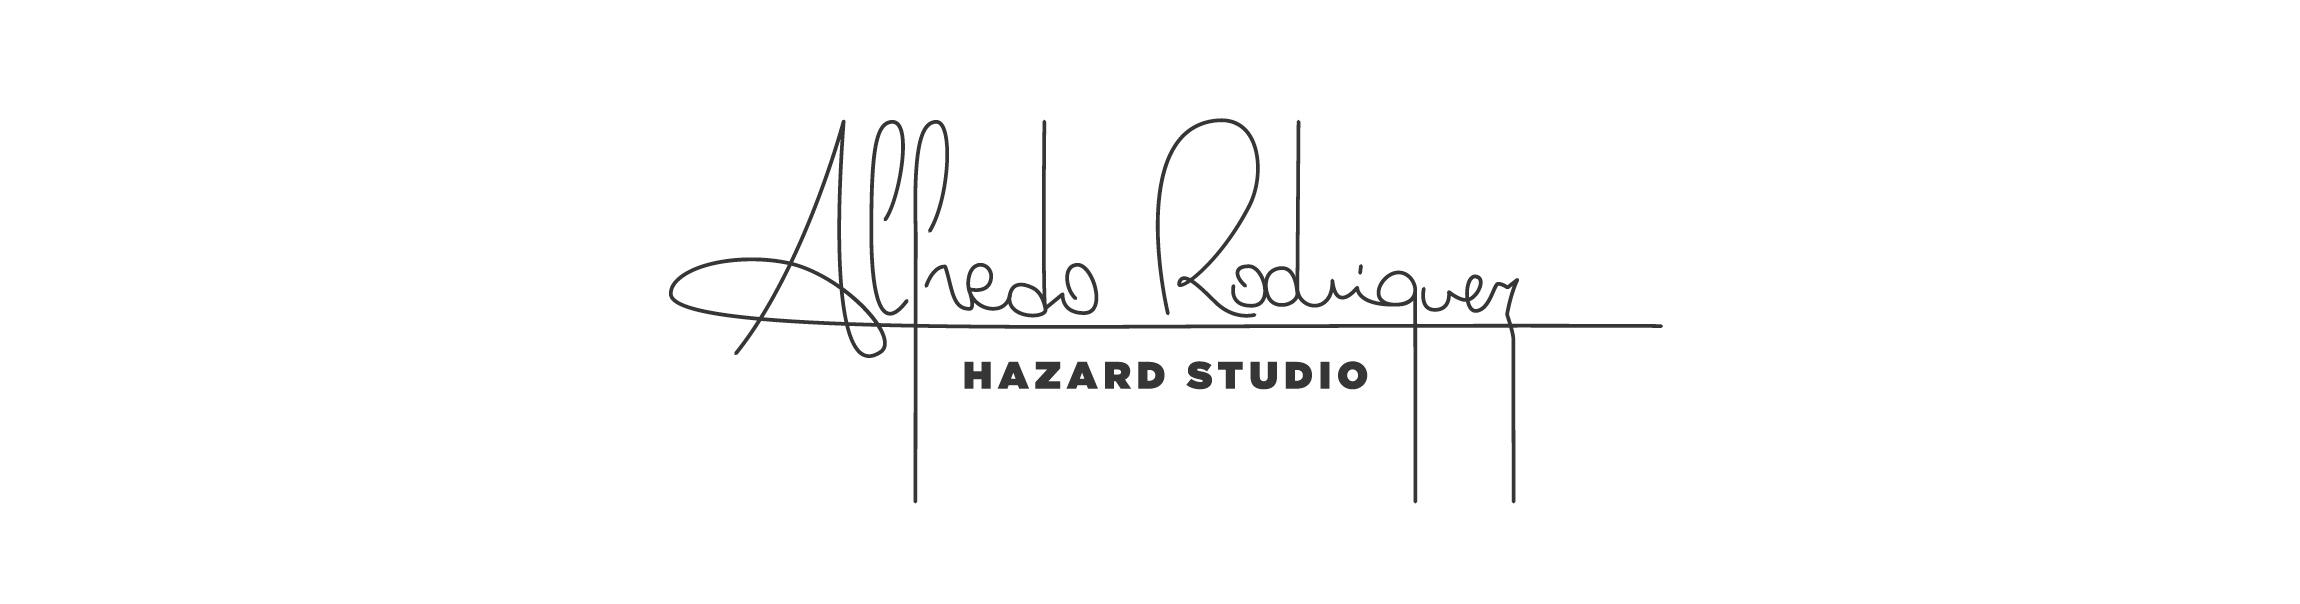 Hazard Studio - Alfredo Rodriguez